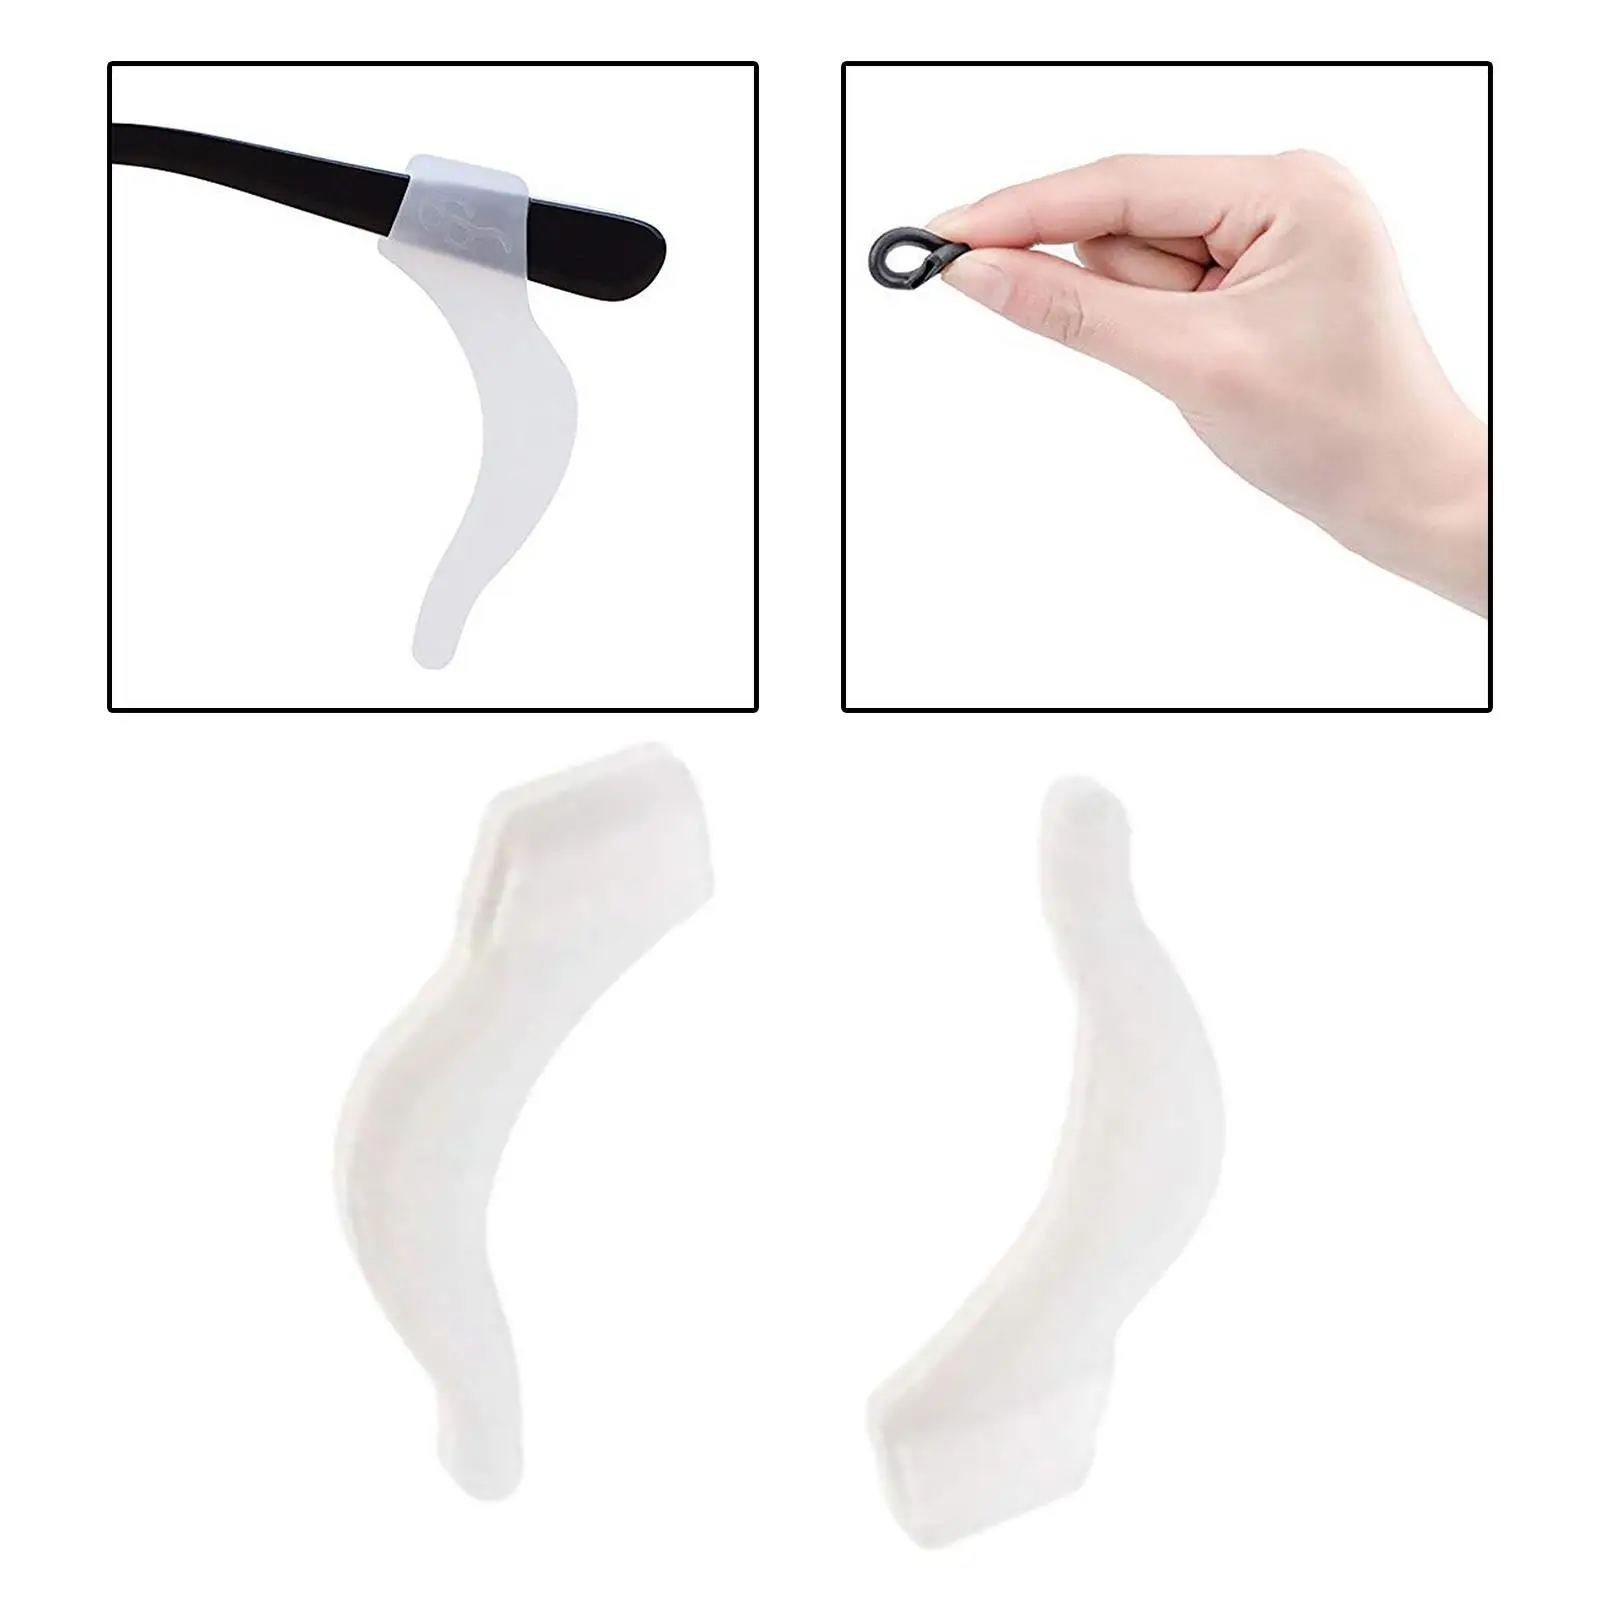 1 Pair Anti Slip Eyeglass Ear Hook Silicone Eyeglasses Grip Good Texture Eyewear Retainers Eyeglasses Temple Tips Sleeve Holder